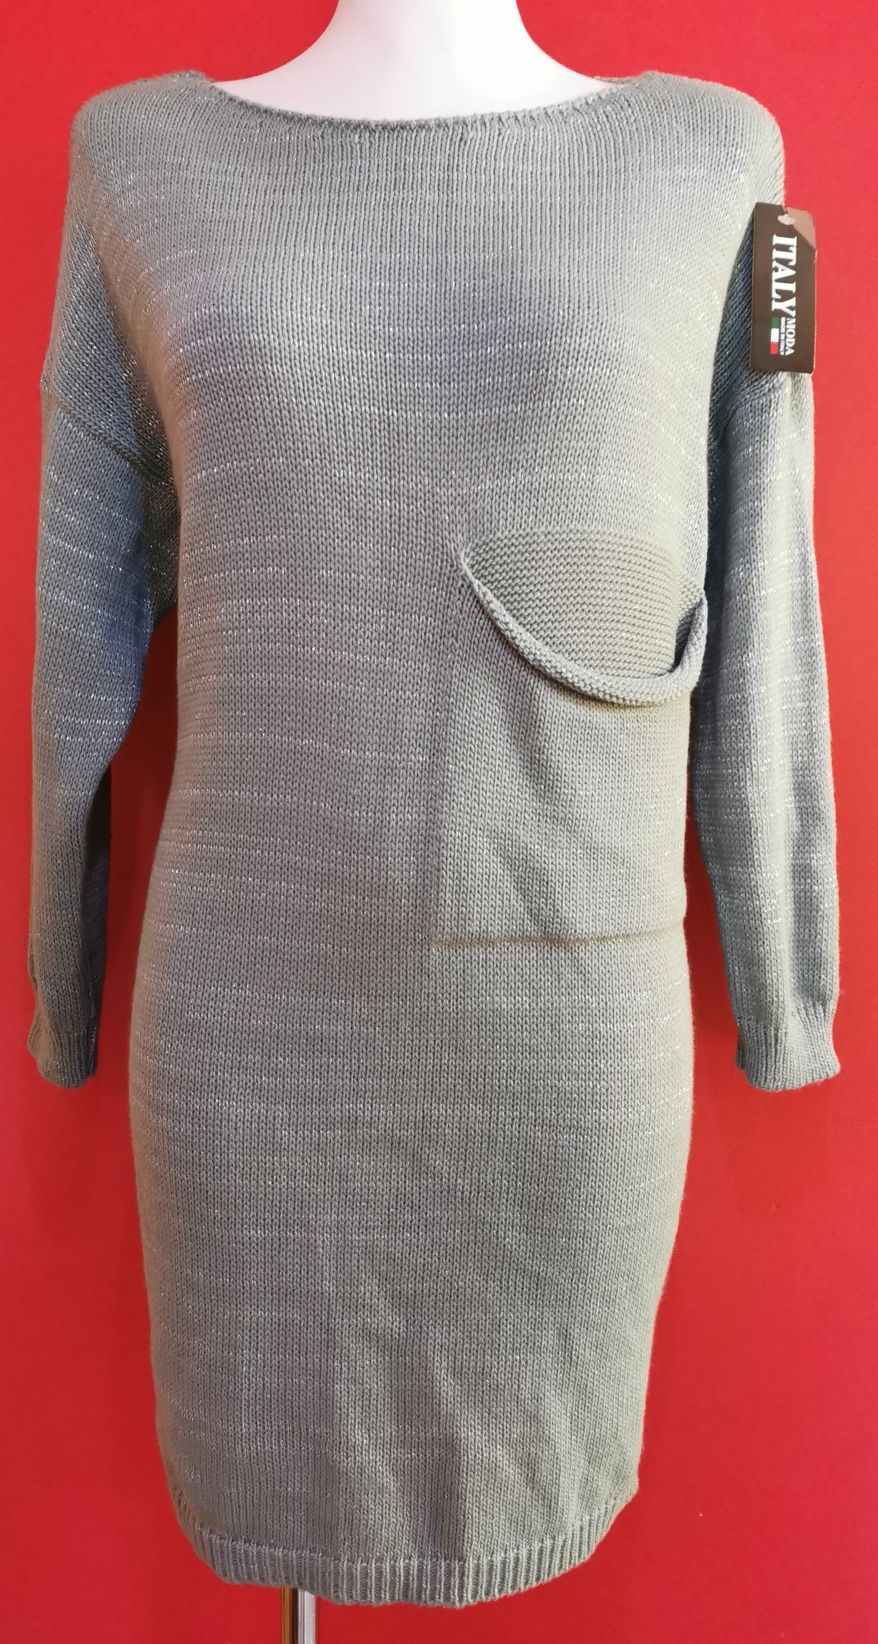 Sweterek sweter długi sukienka kieszeń